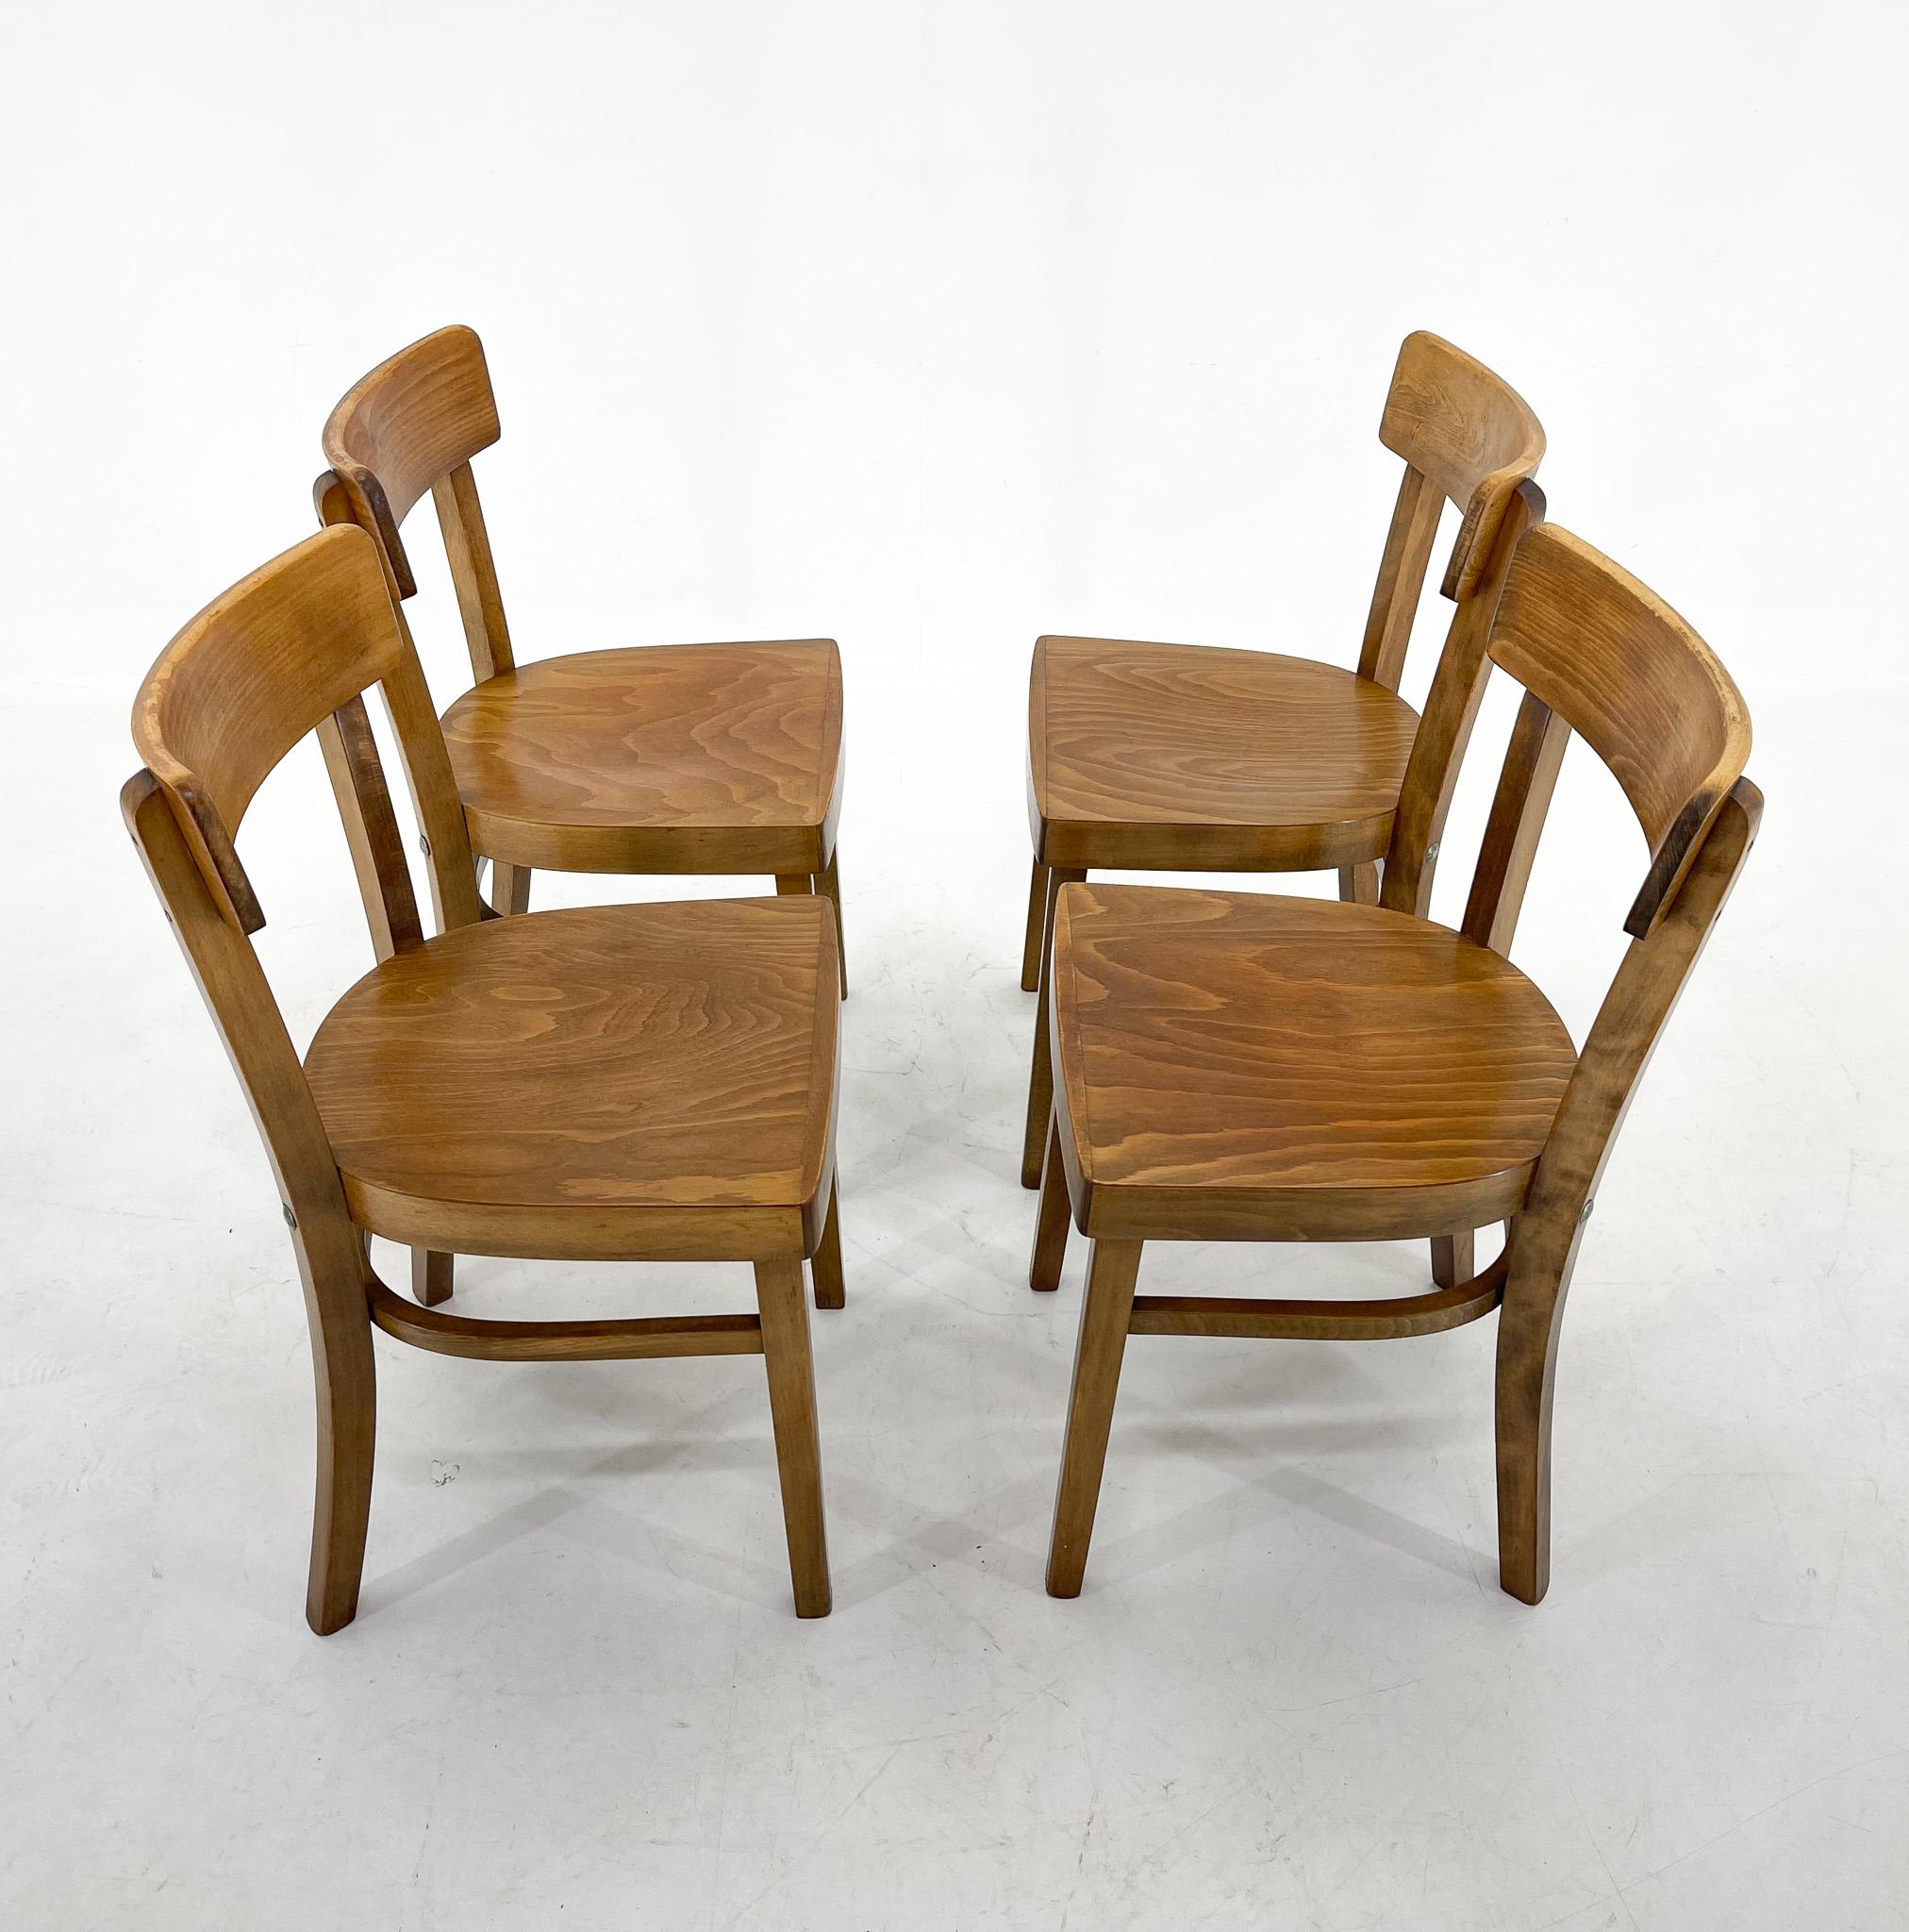 Satz von vier Esszimmerstühlen aus Holz, hergestellt in der ehemaligen Tschechoslowakei in den 1960er Jahren von der berühmten Firma TON.